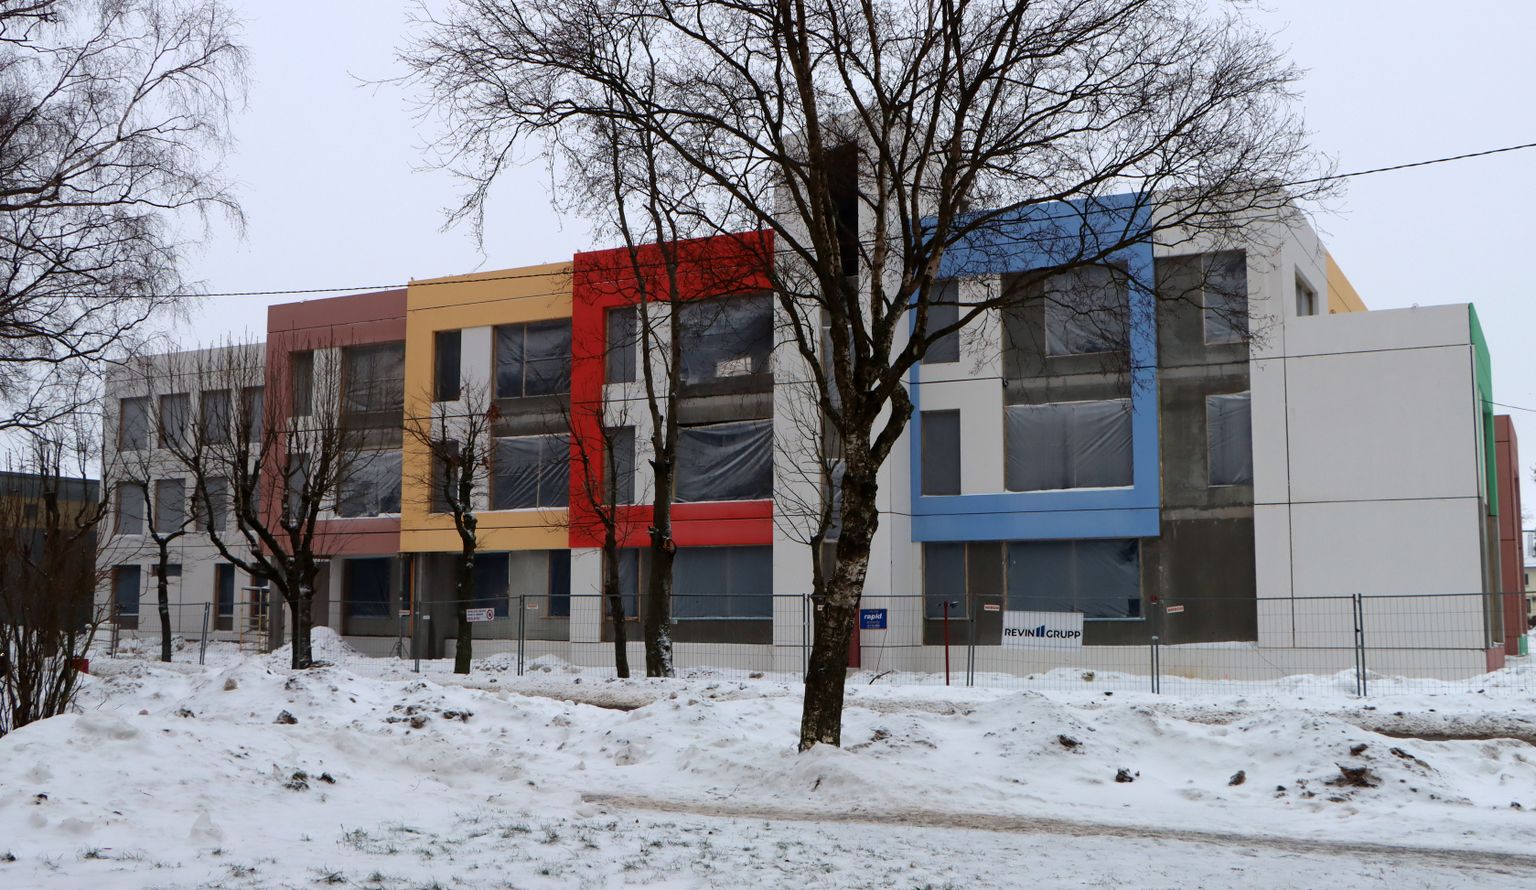 Uus koolimaja köidab pilku oma tavatute värviliste seintega, peagi paigldatakse katusele klaaskuppel.